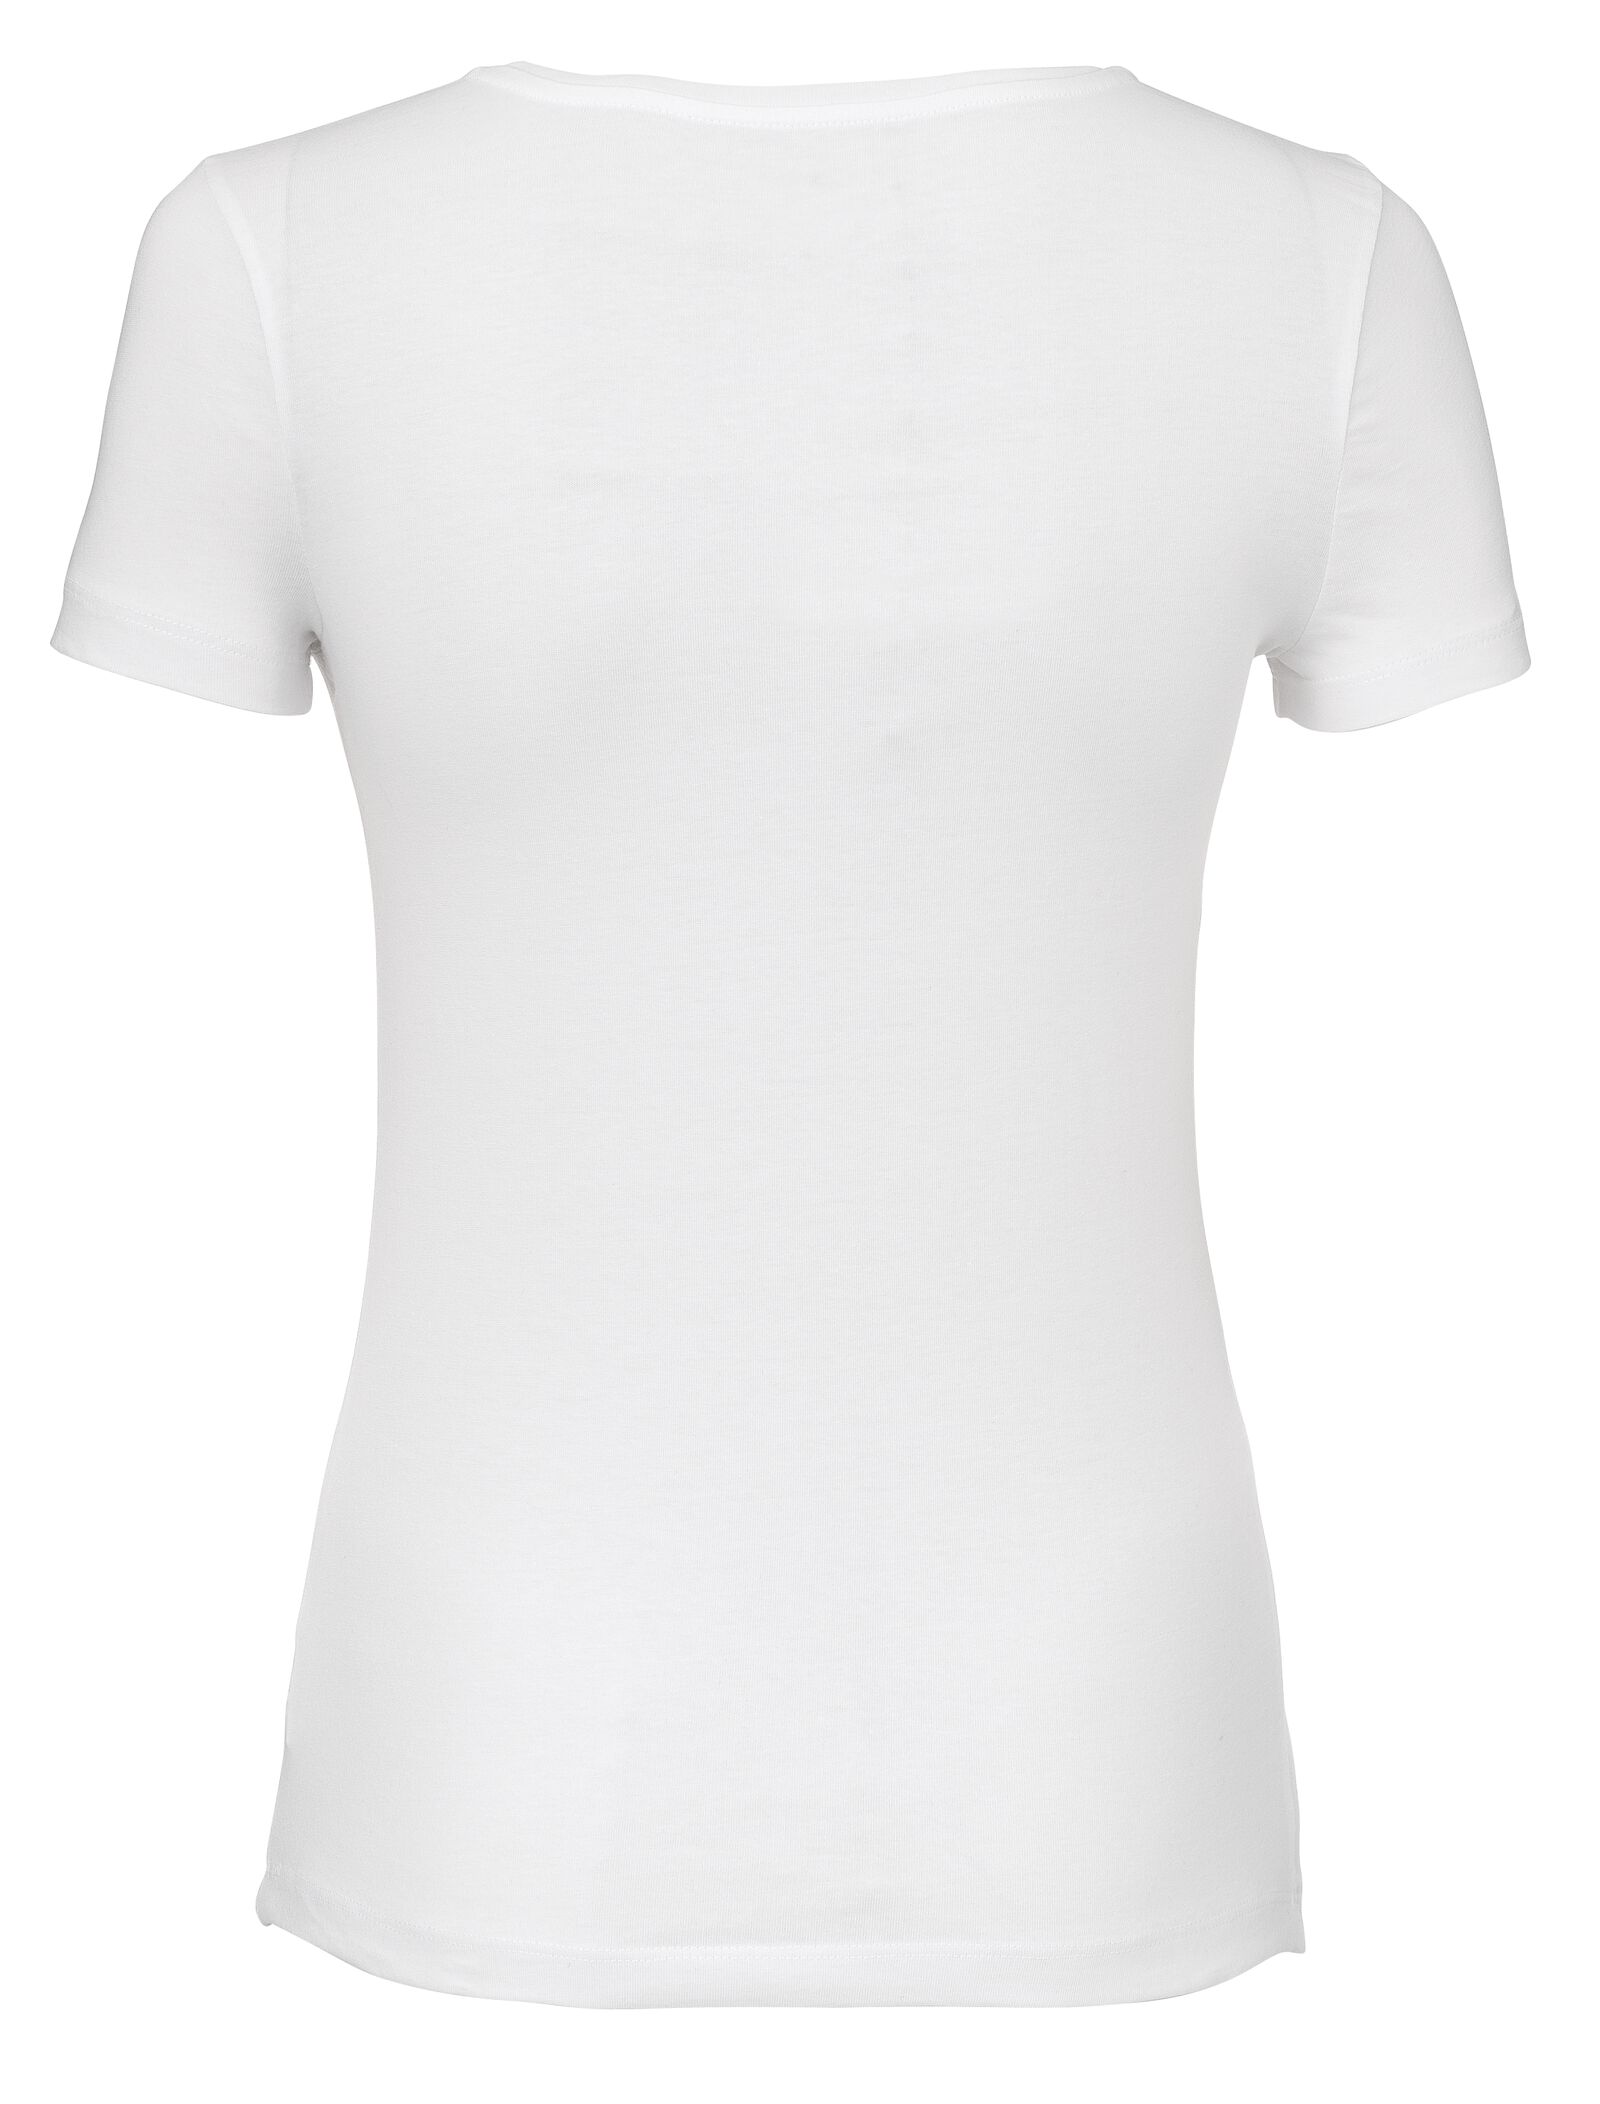 dames t-shirt wit L - 36301763 - HEMA